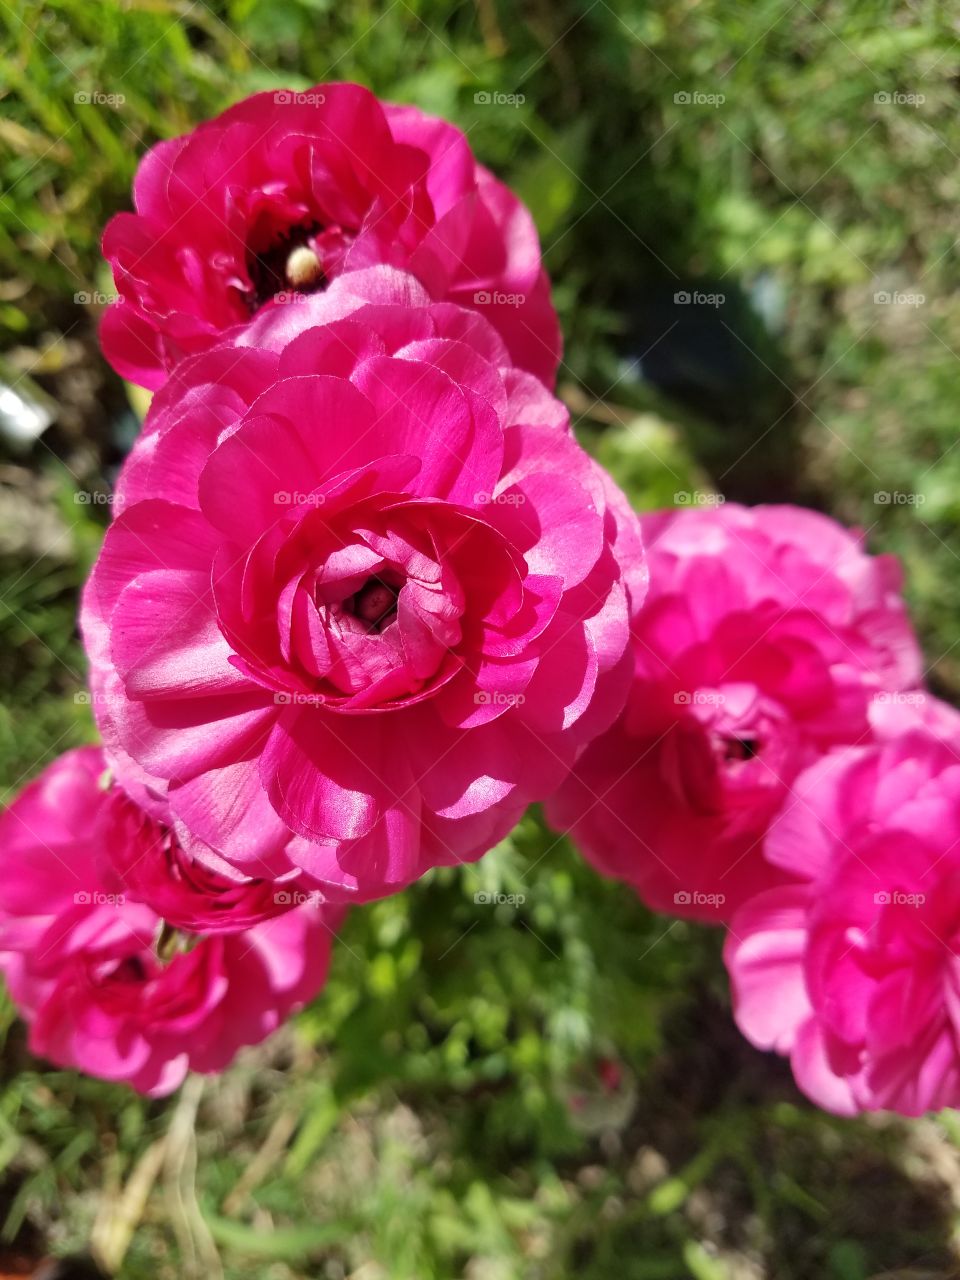 pink flowers (ranunculus)